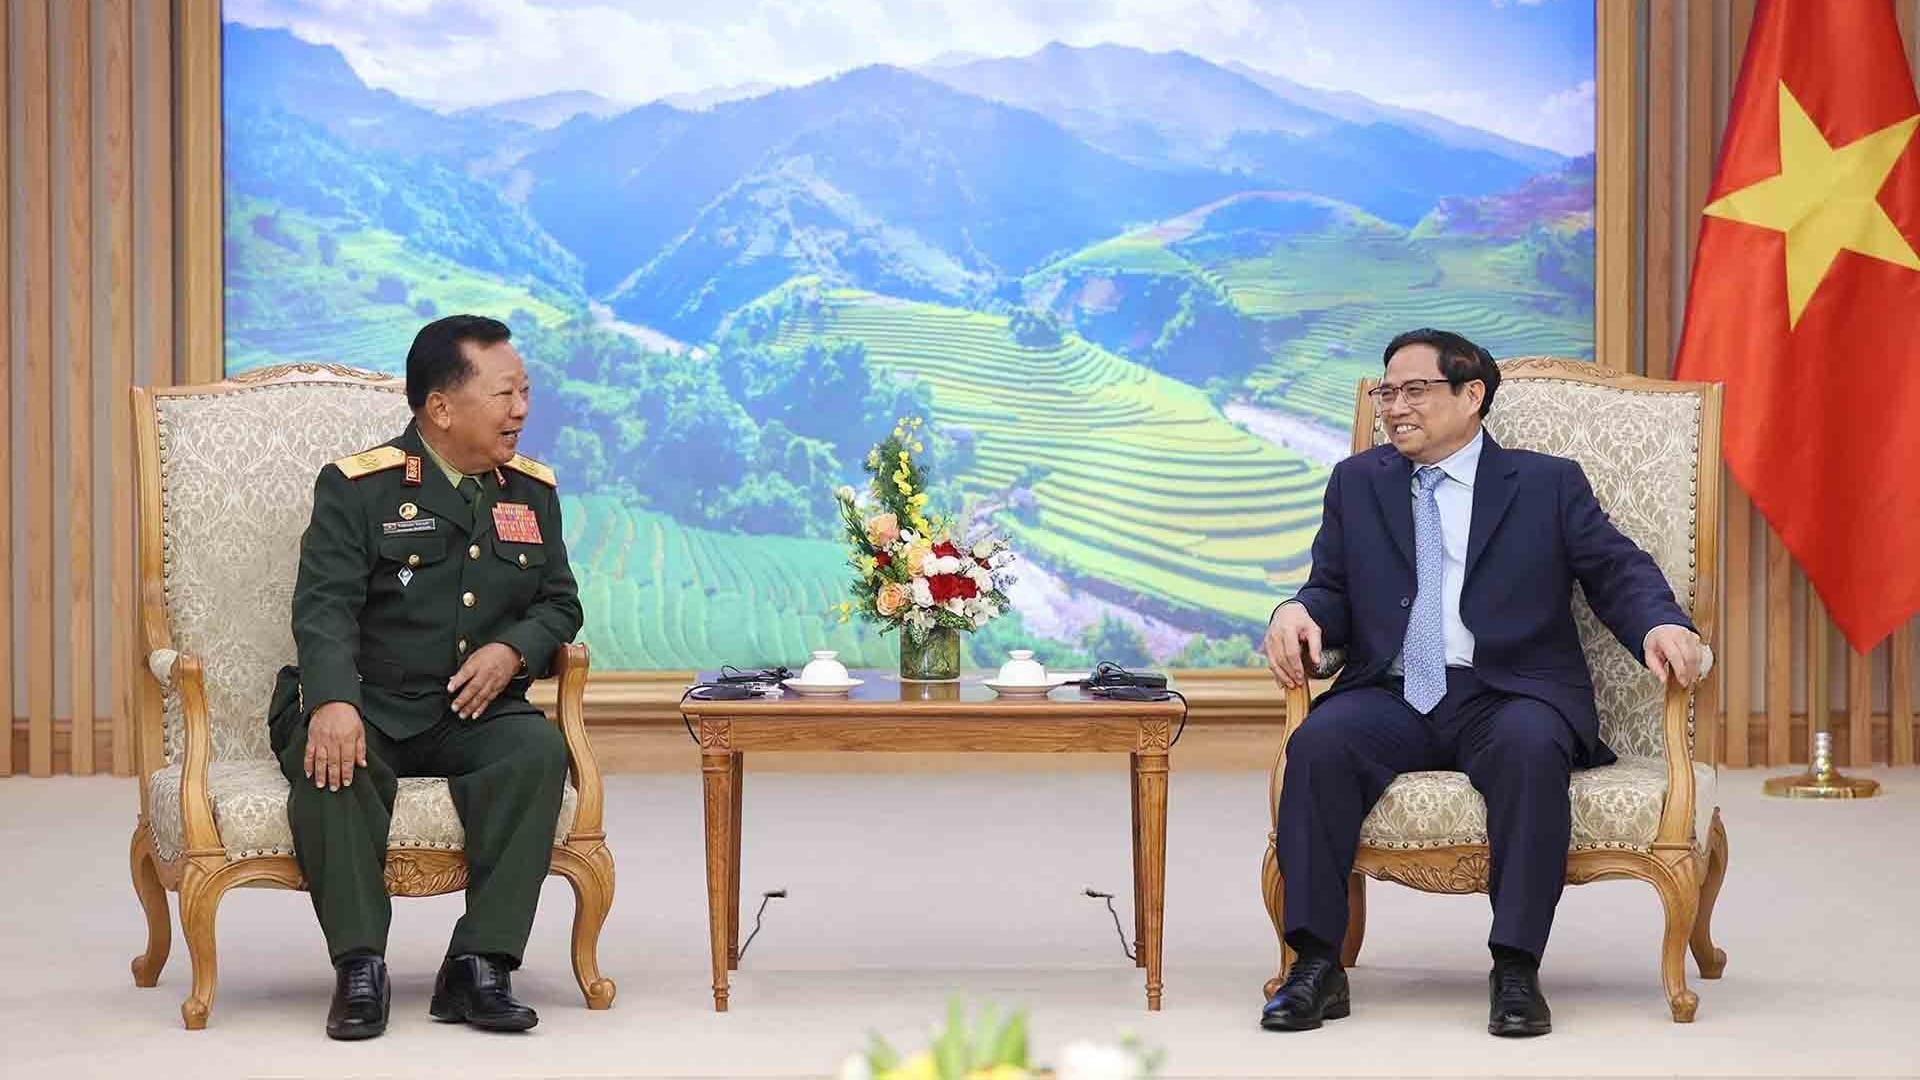 Hợp tác quốc phòng luôn là một trong những trụ cột rất quan trọng trong quan hệ Việt Nam-Lào